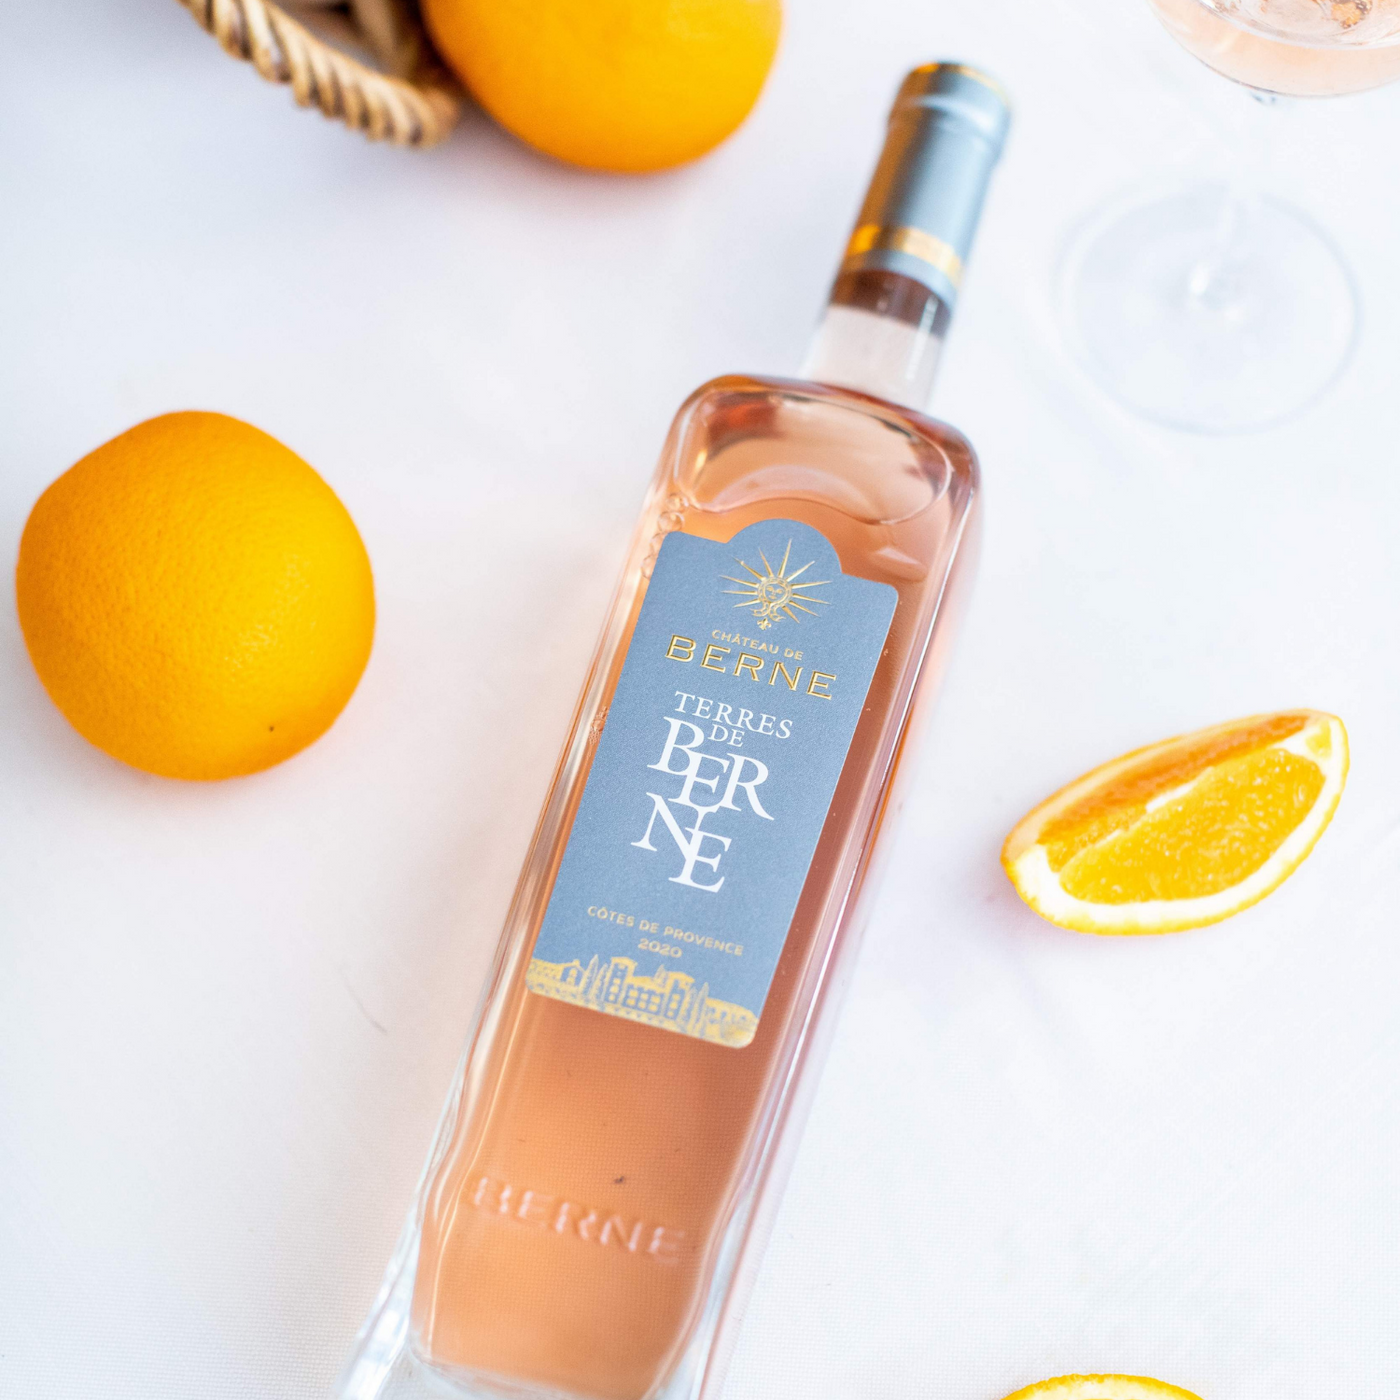 Vin Rosé 2021 AOP Côtes de Provence MATHUSALEM - Terres de Berne